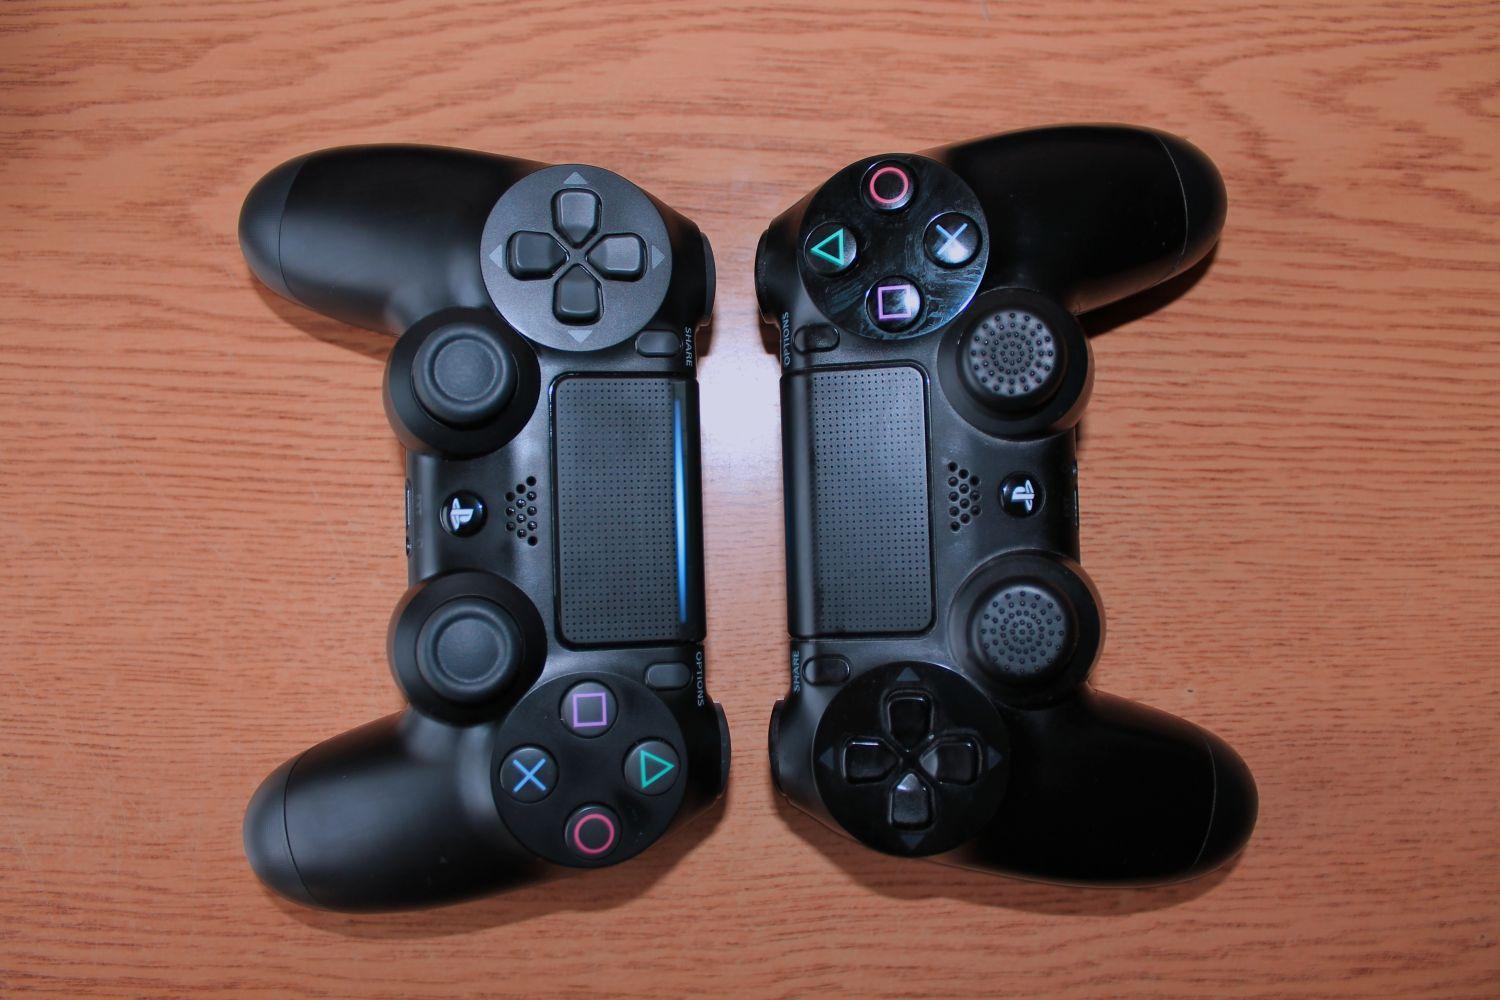 Na novom DualShocku 4 (vľavo) pribudol svetelný indikátor v hornej časti touchpadu